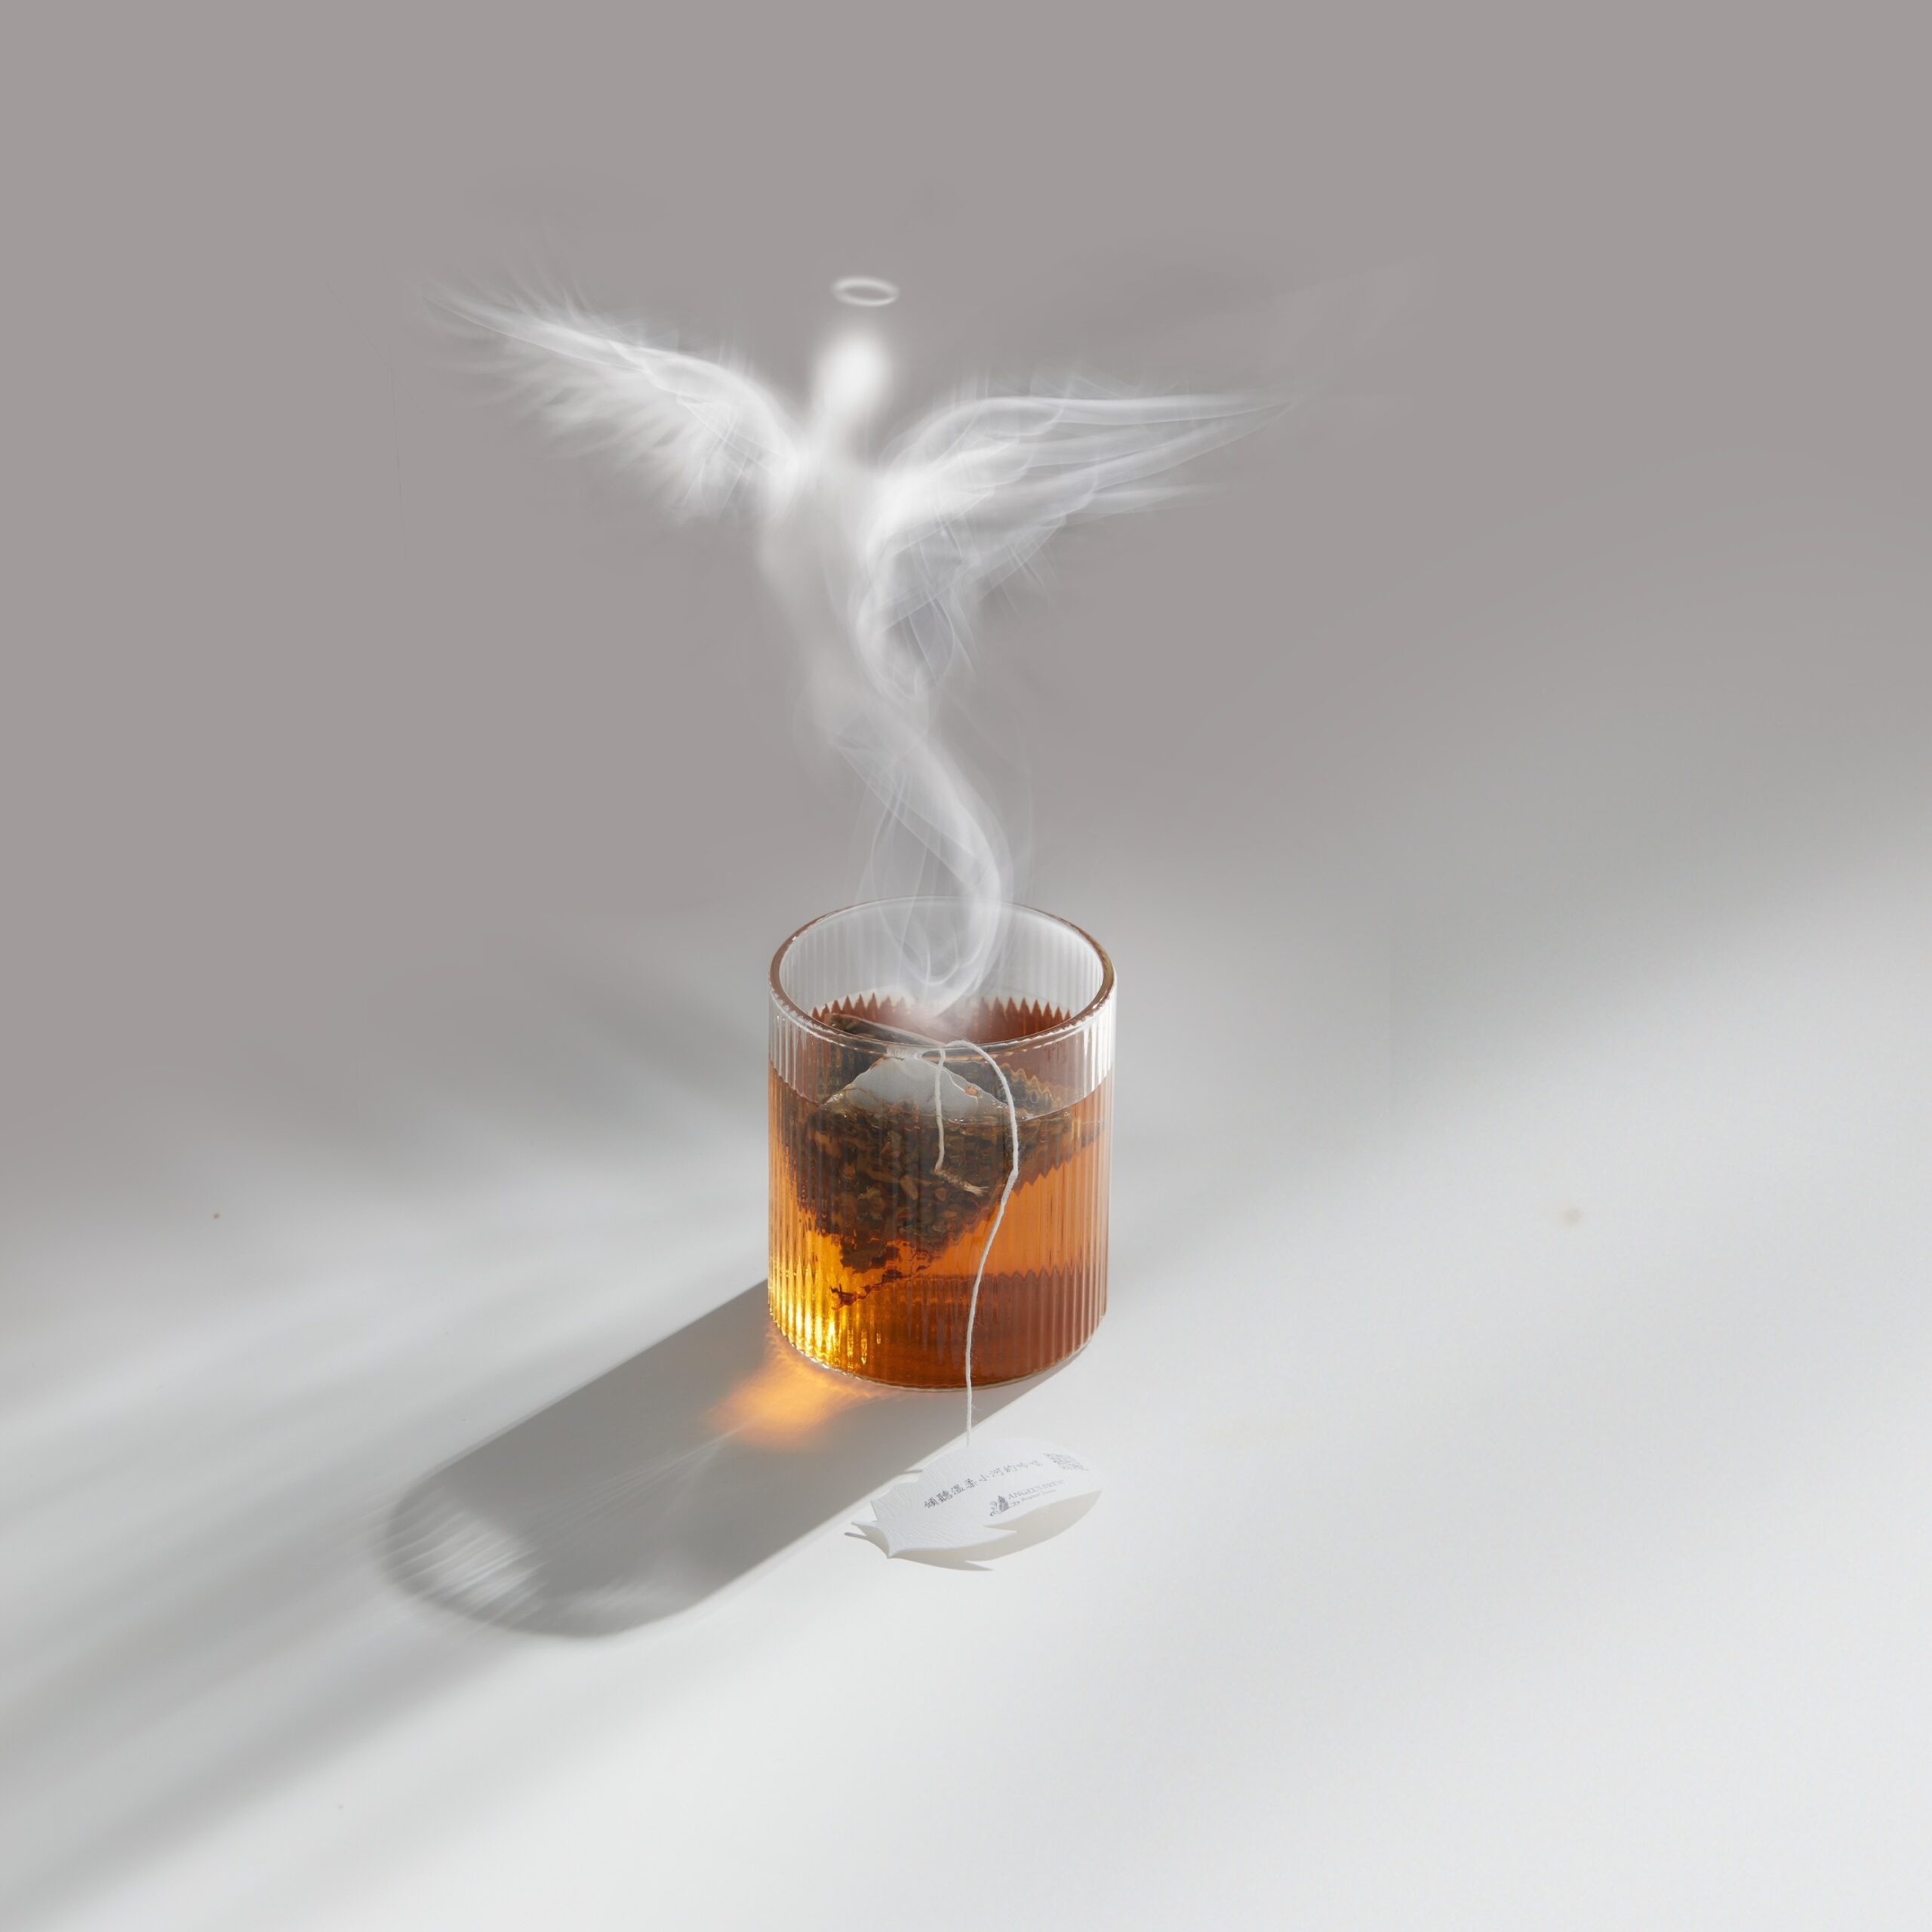 茶包新品牌 Angel&#8217;s Brew 每包都有天使給的心靈小語